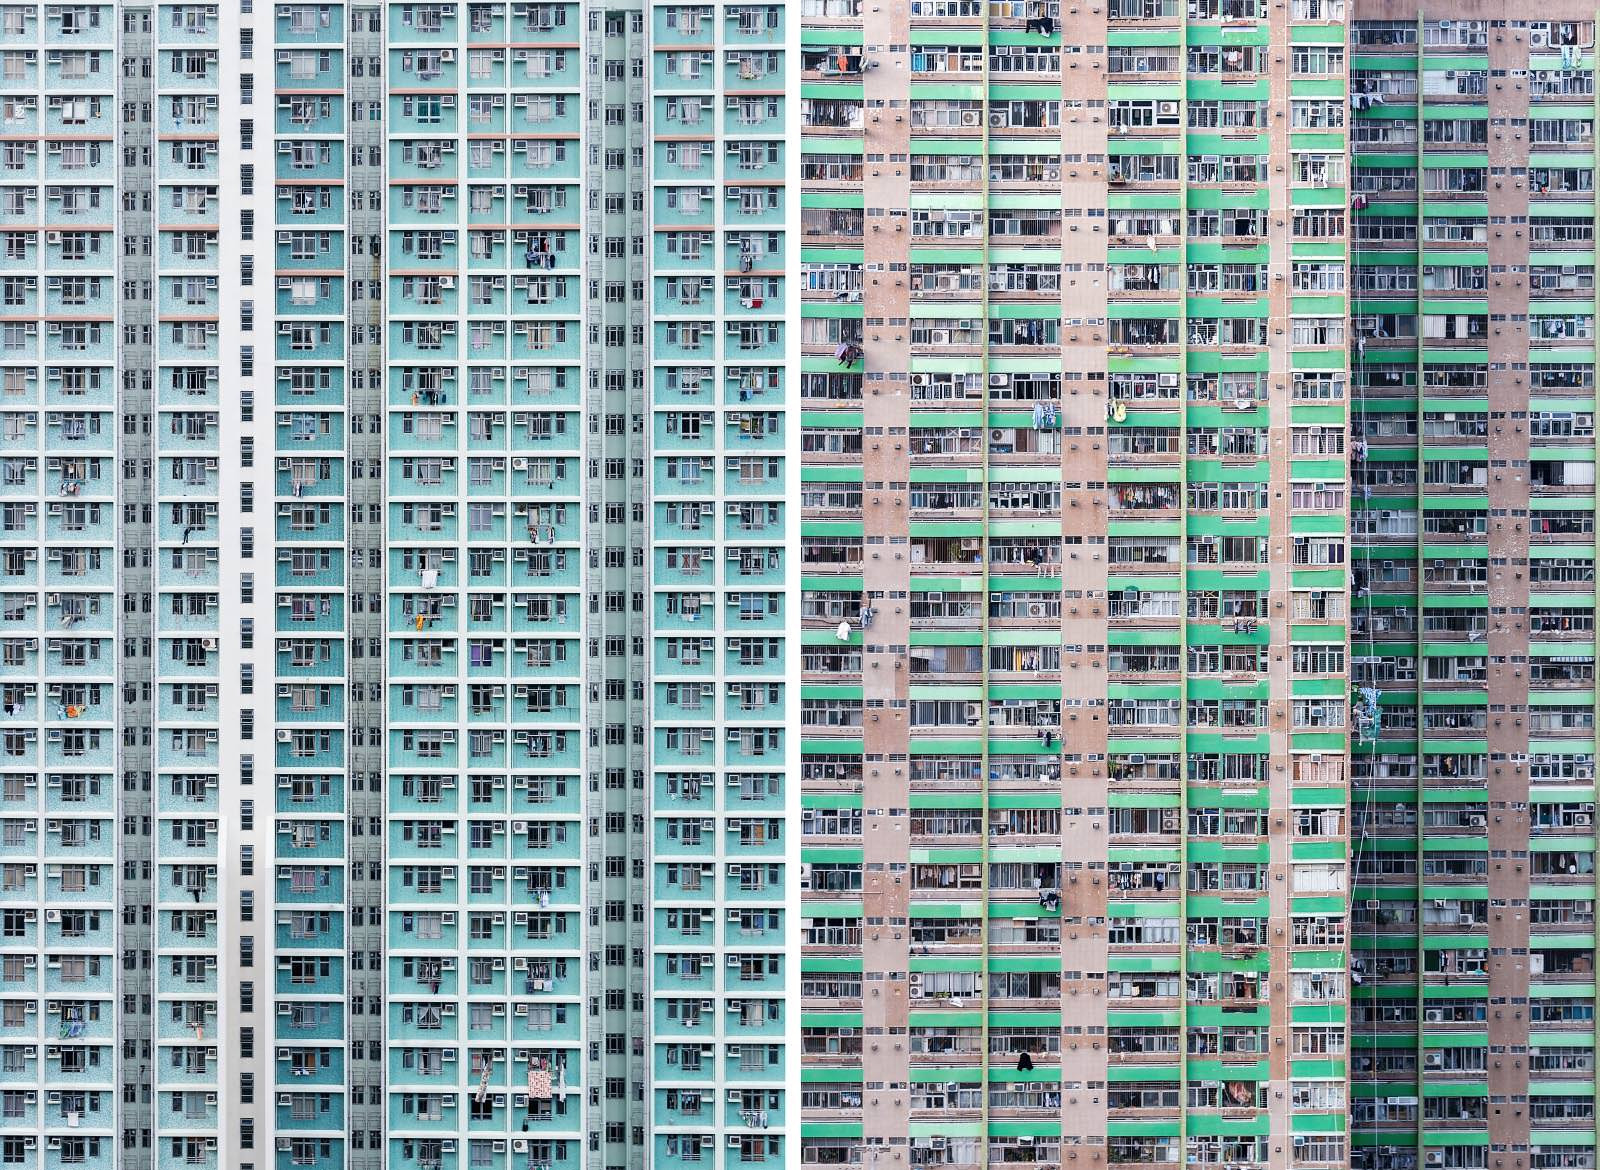 Zwei Bilder aus der Serie aus Hong Kong und Kowloon